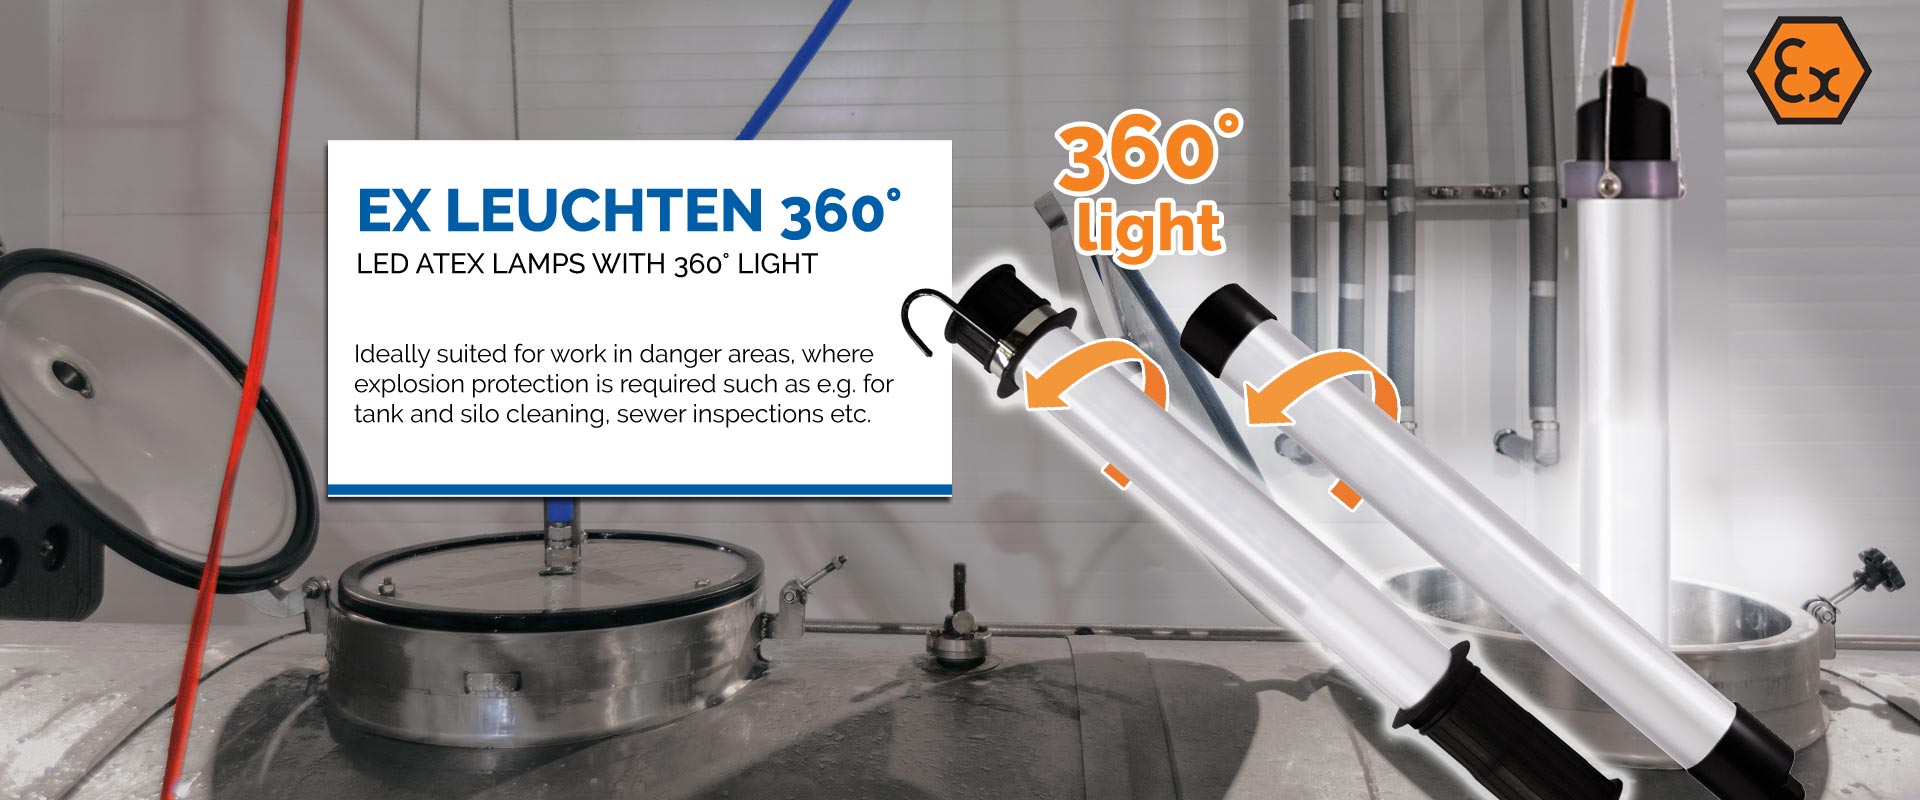 KIRA Leuchten of Manufacturer lights | ATEX and GmbH lighting LED - KIRA Leuchten